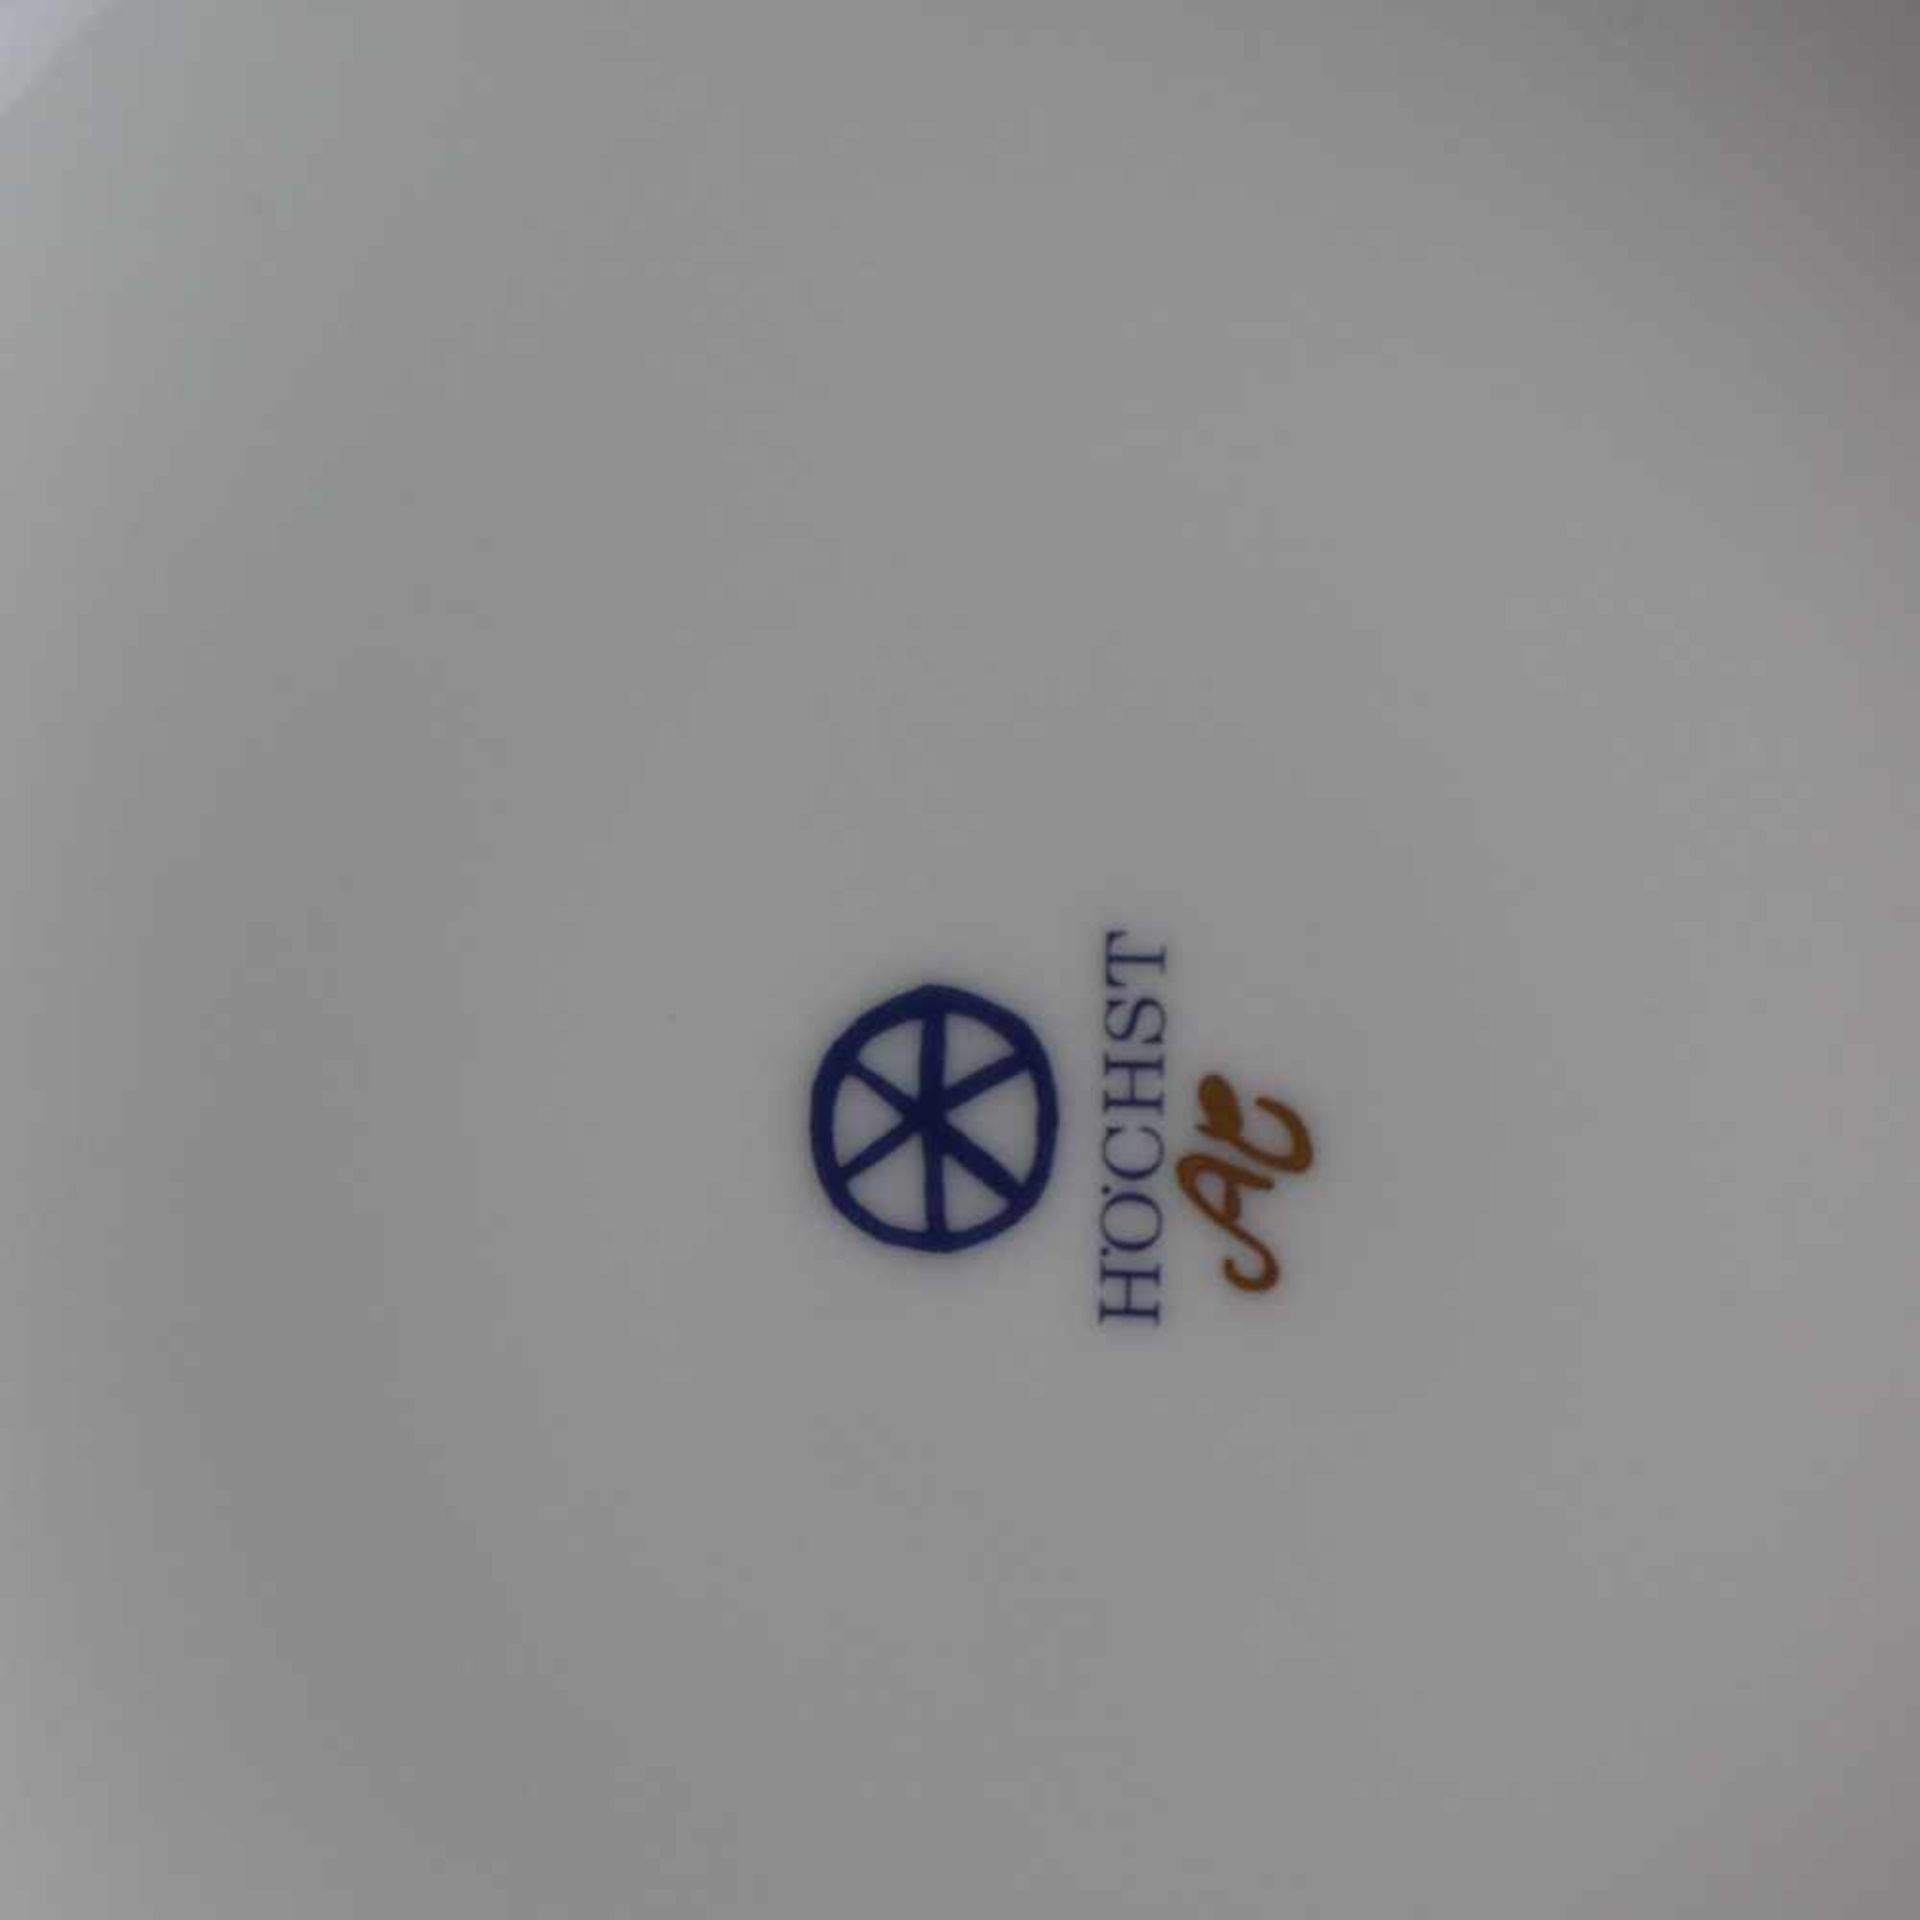 Kugelvase- Hoechst, blaue Radmarke, in Gold bez. "AC", Wandung umlaufend mit polychromem - Bild 8 aus 8